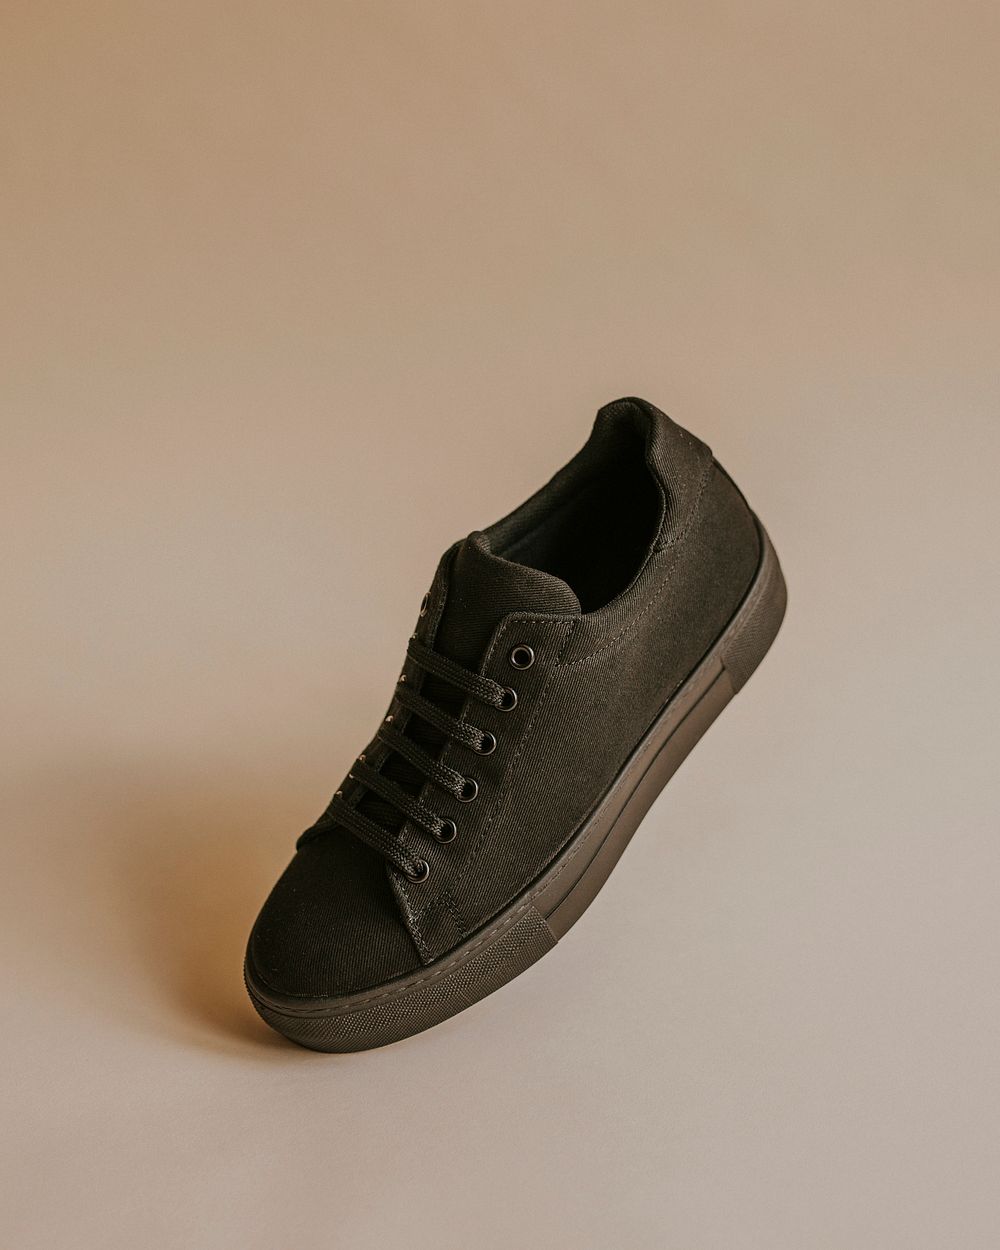 Black canvas sneaker shoe on beige